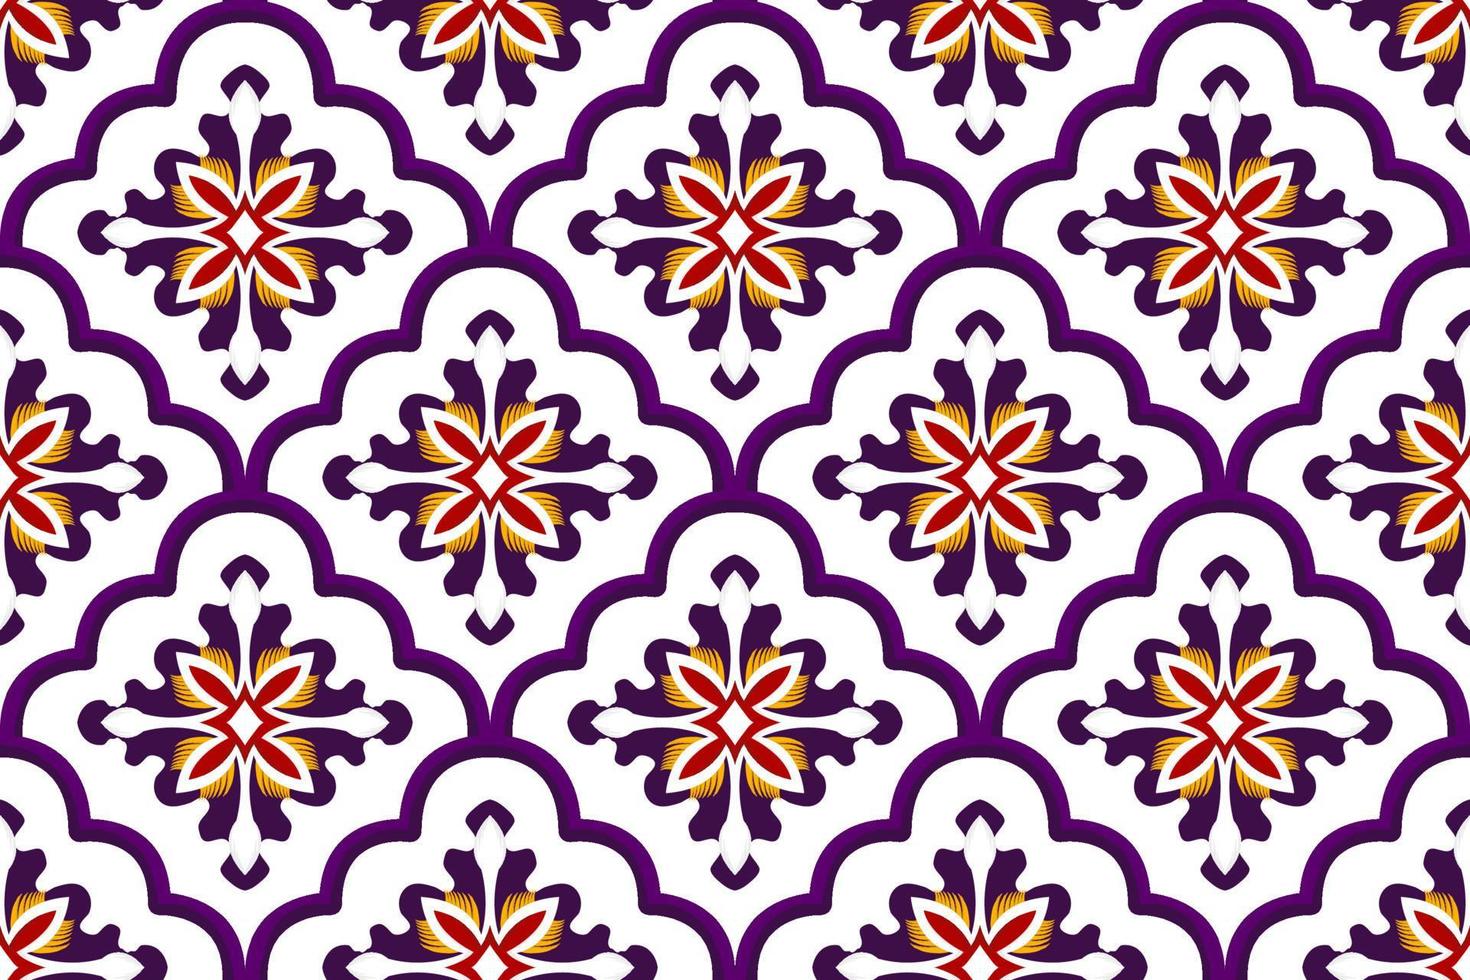 abstrakt geometriska etniska marockanska sömlösa mönsterdesign. Aztec tyg matta mandala prydnad chevron textil dekoration tapeter. tribal traditionella broderi vektor illustrationer bakgrund